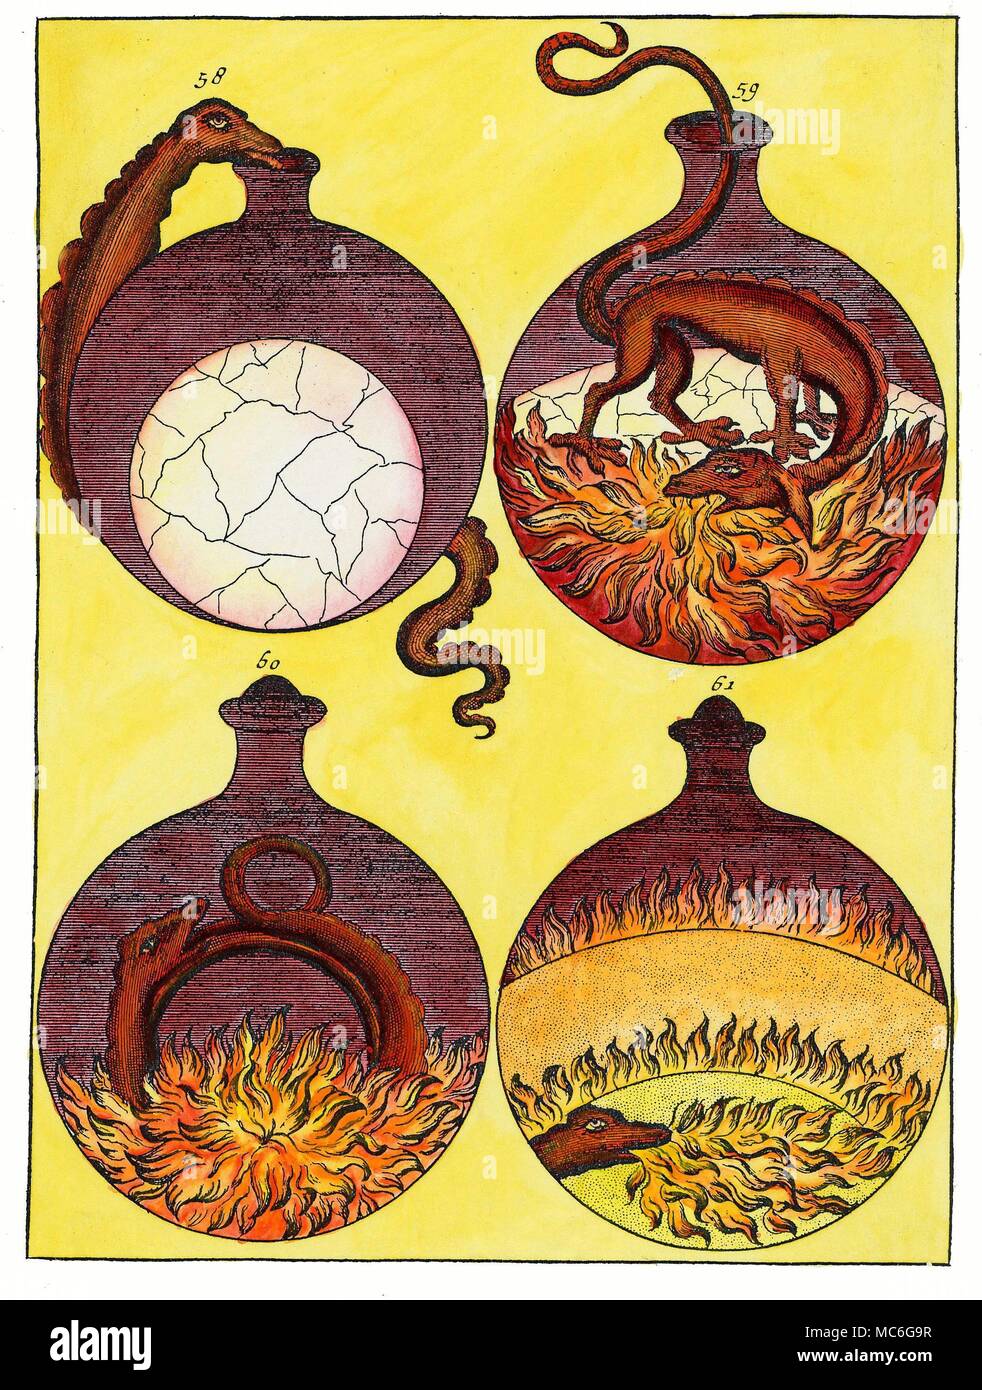 Alchemie - SALAMANDER - FEUERELEMENTAR einem alchemistischen Prozess, da in vier Stufen, die in einem einzigen Glas Schiff vertreten. Die Elemente des Feuers (Salamander) ist als spielen eine wichtige Rolle in diesem Prozess dargestellt. Im zweiten Behälter wird es angezeigt wird essen Flammen, in der dritten, es schwelgt in die Flammen, und scheint in eine ouroboros Snake umgewandelt worden zu sein. Handcolorierte Kupferstich von Johann Conrad Wiesel, Elementa Chemiae, 1718. Stockfoto